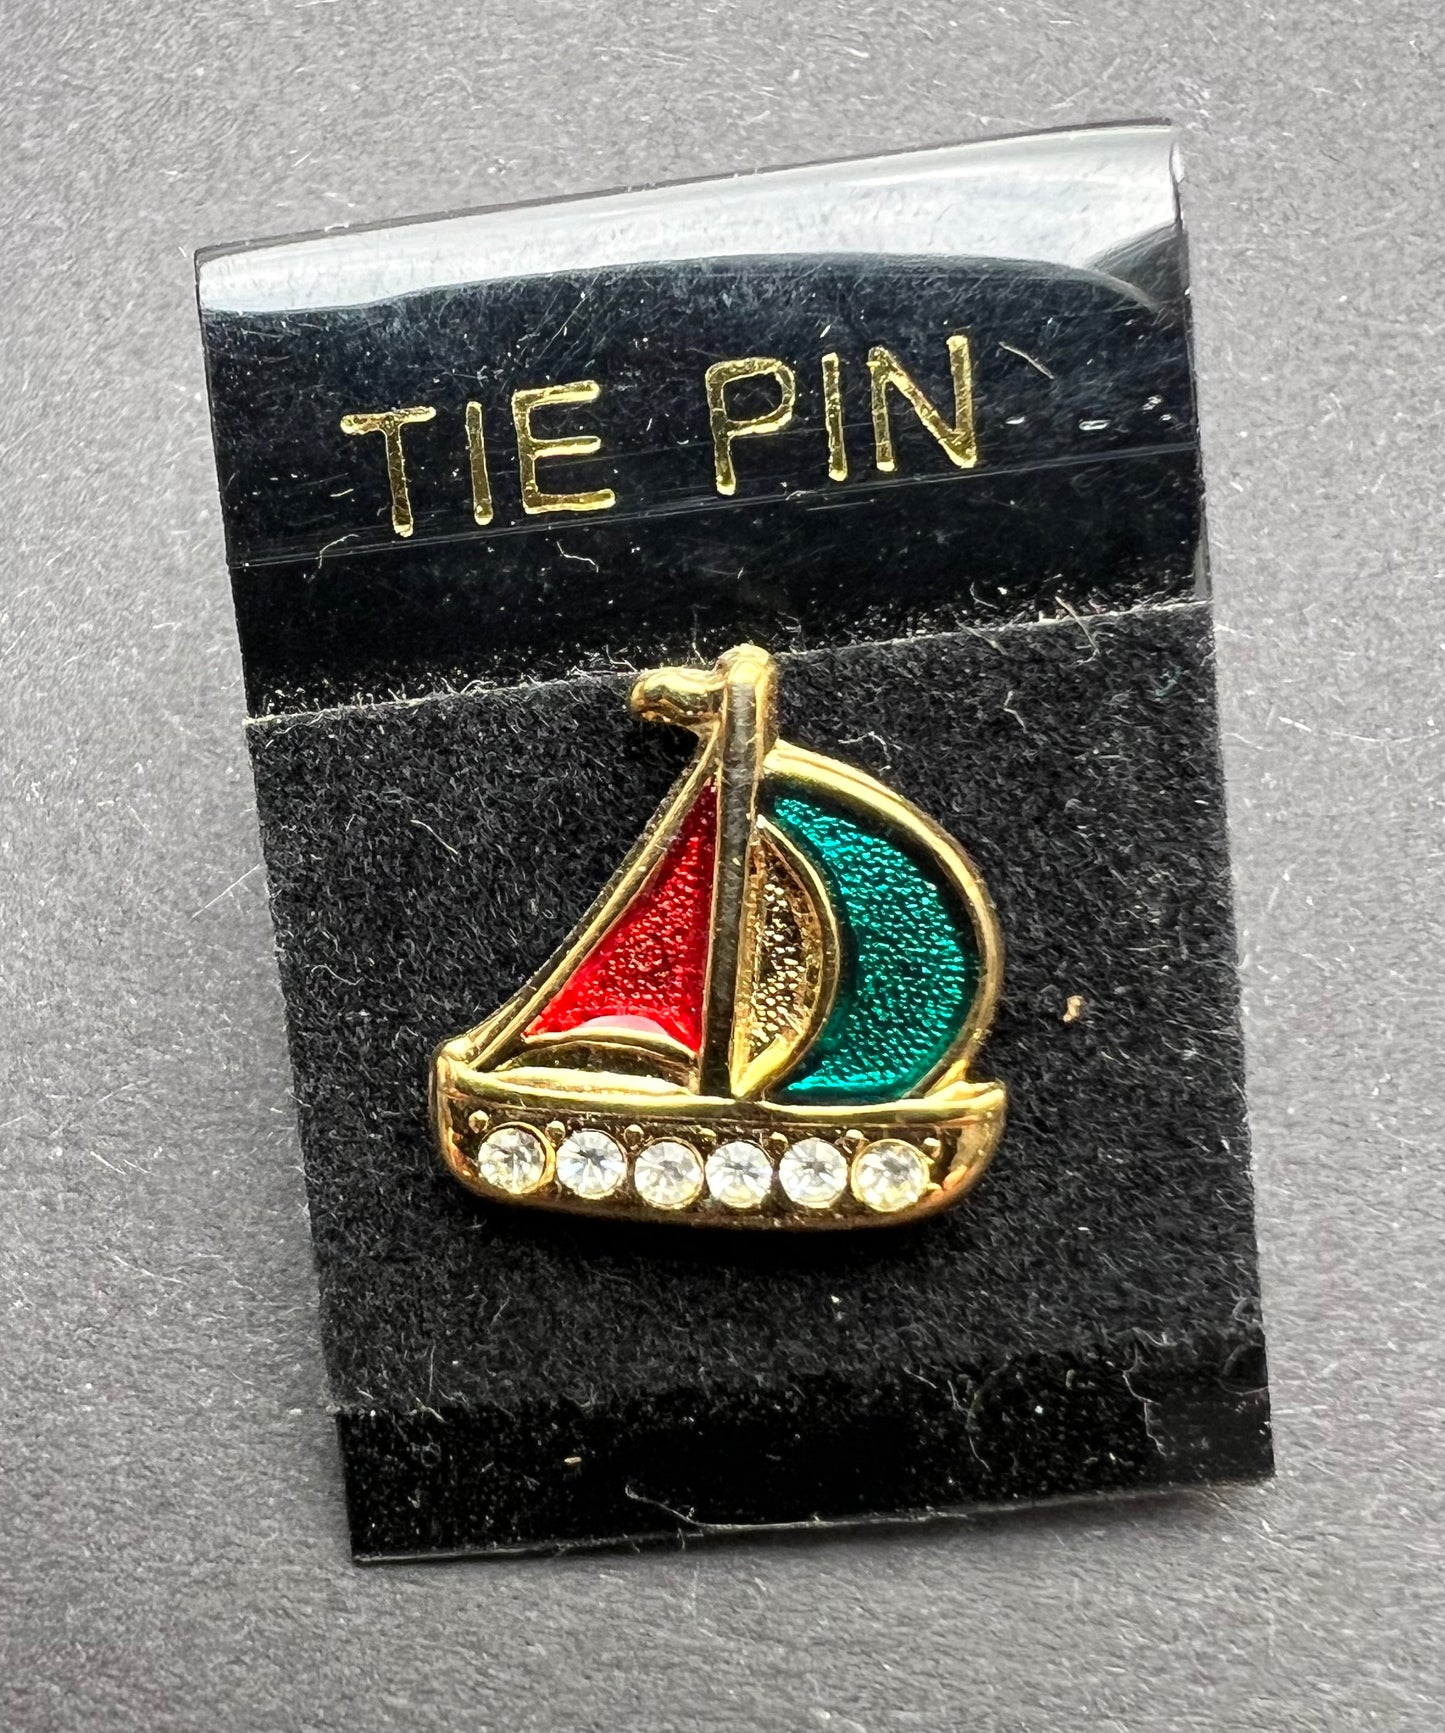 Gorgeous Vintage Enamel & Diamante Tie Pins - Choice of 3 designs